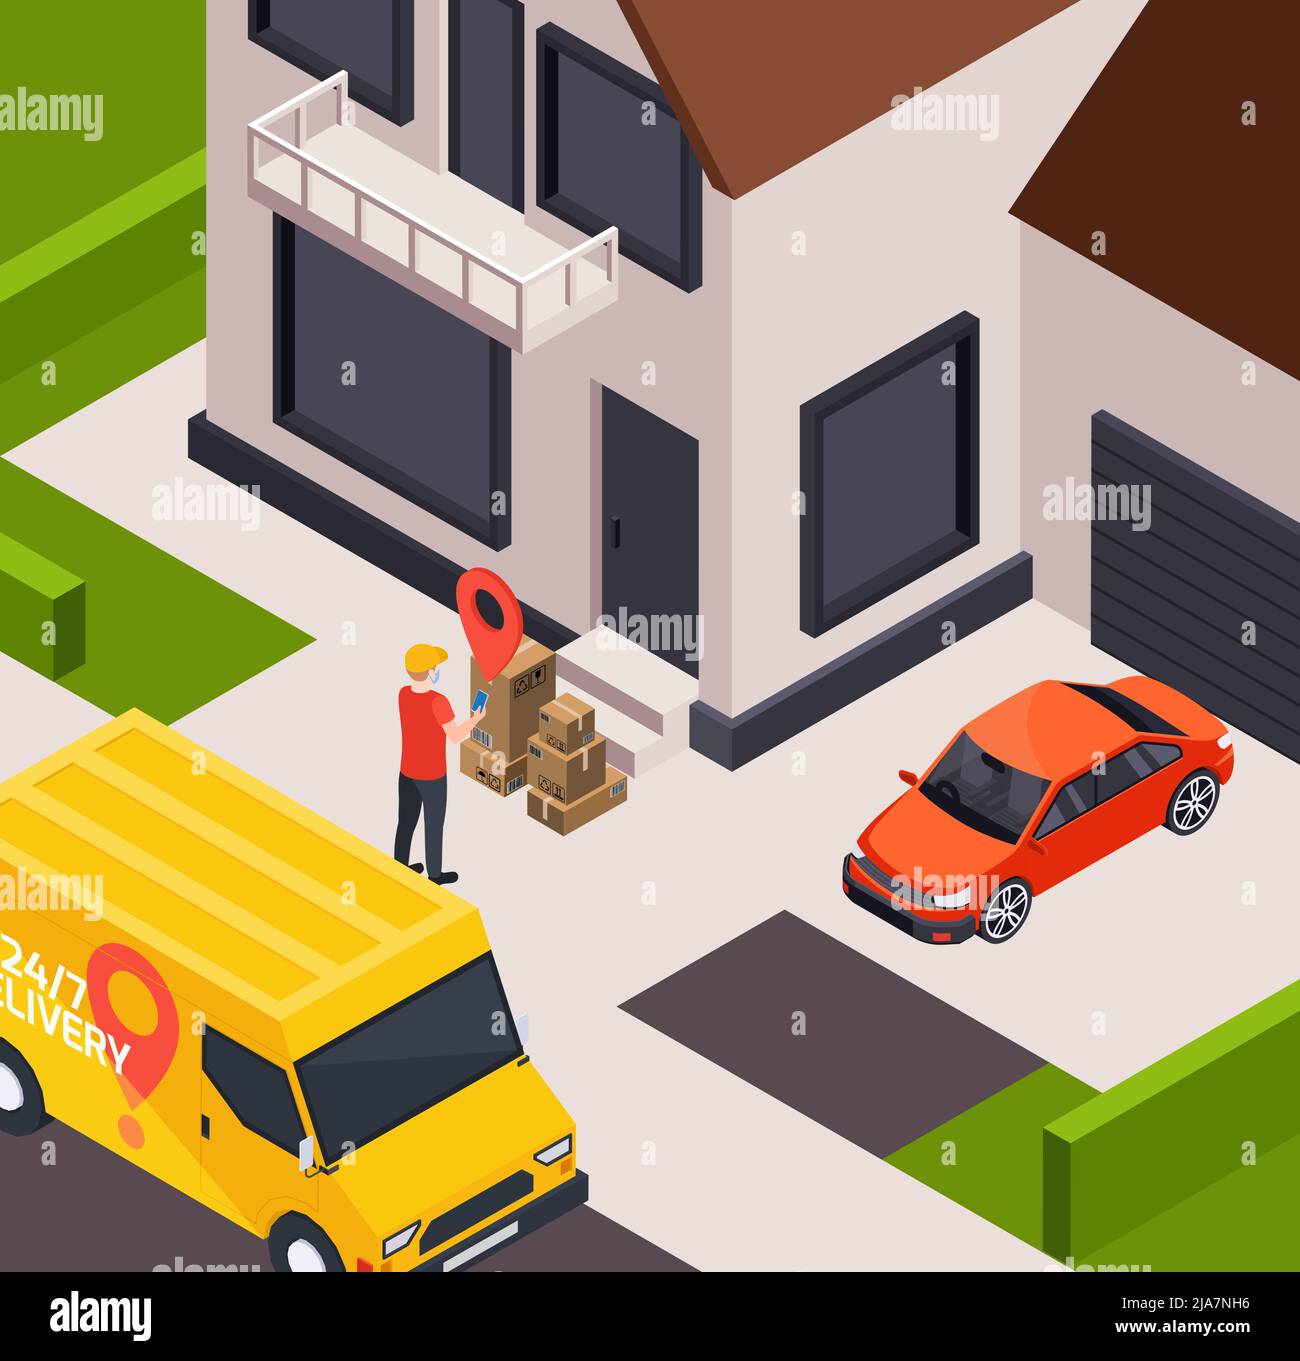 Lieferservice isometrische Zusammensetzung mit Außenansicht des Hauses mit gelben Lieferwagen und Kurier mit Paketen Vektorgrafik Stock Vektor